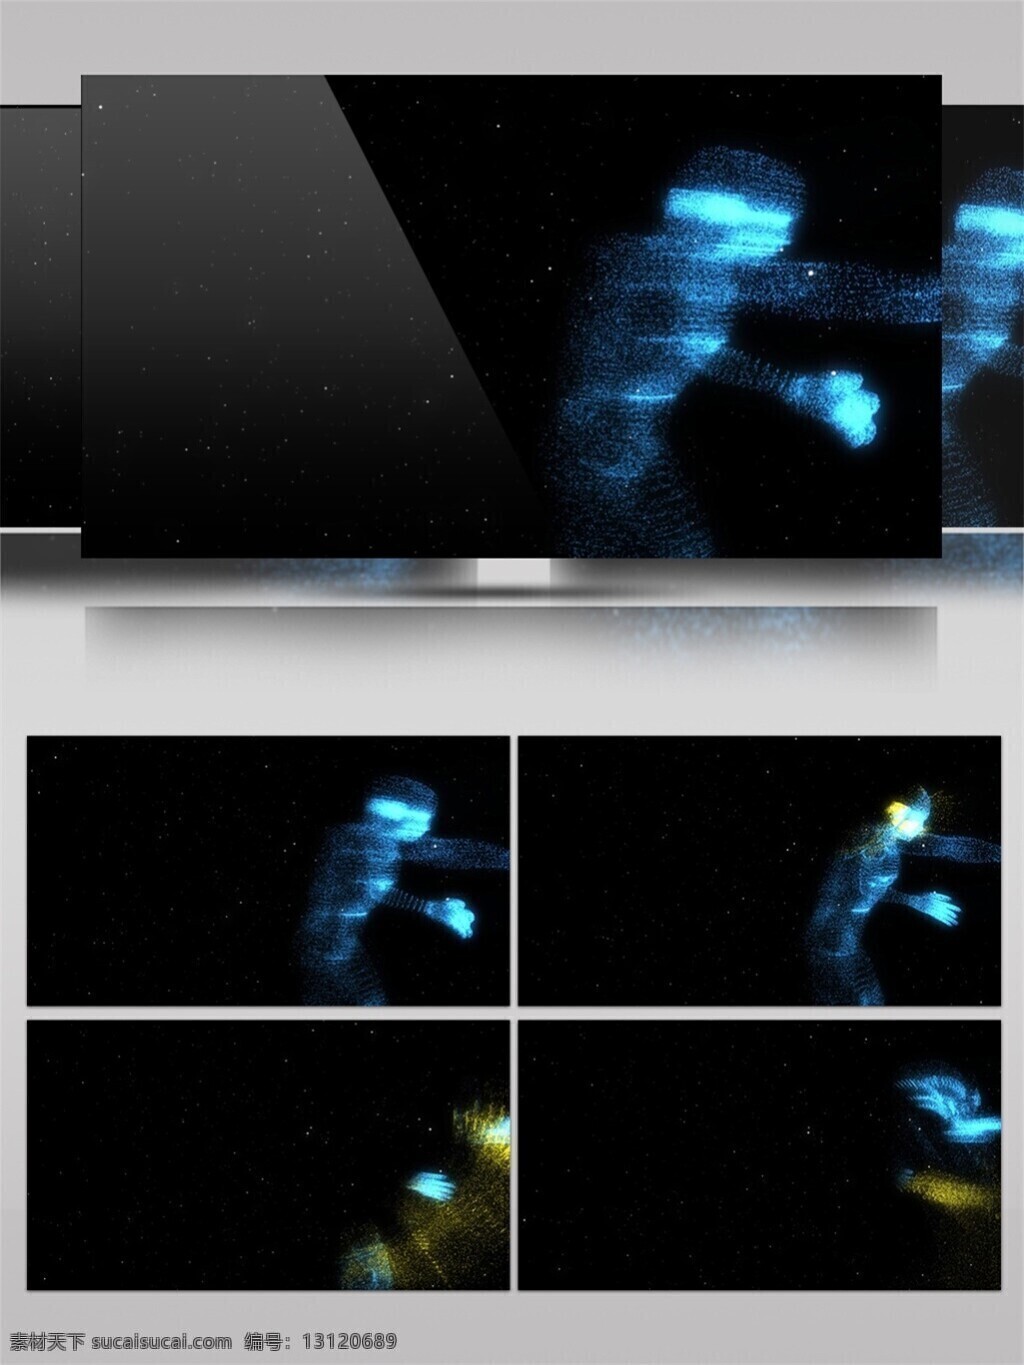 蓝色 星际 光雾 视频 光束 激光 视觉享受 手机壁纸 光斑散射